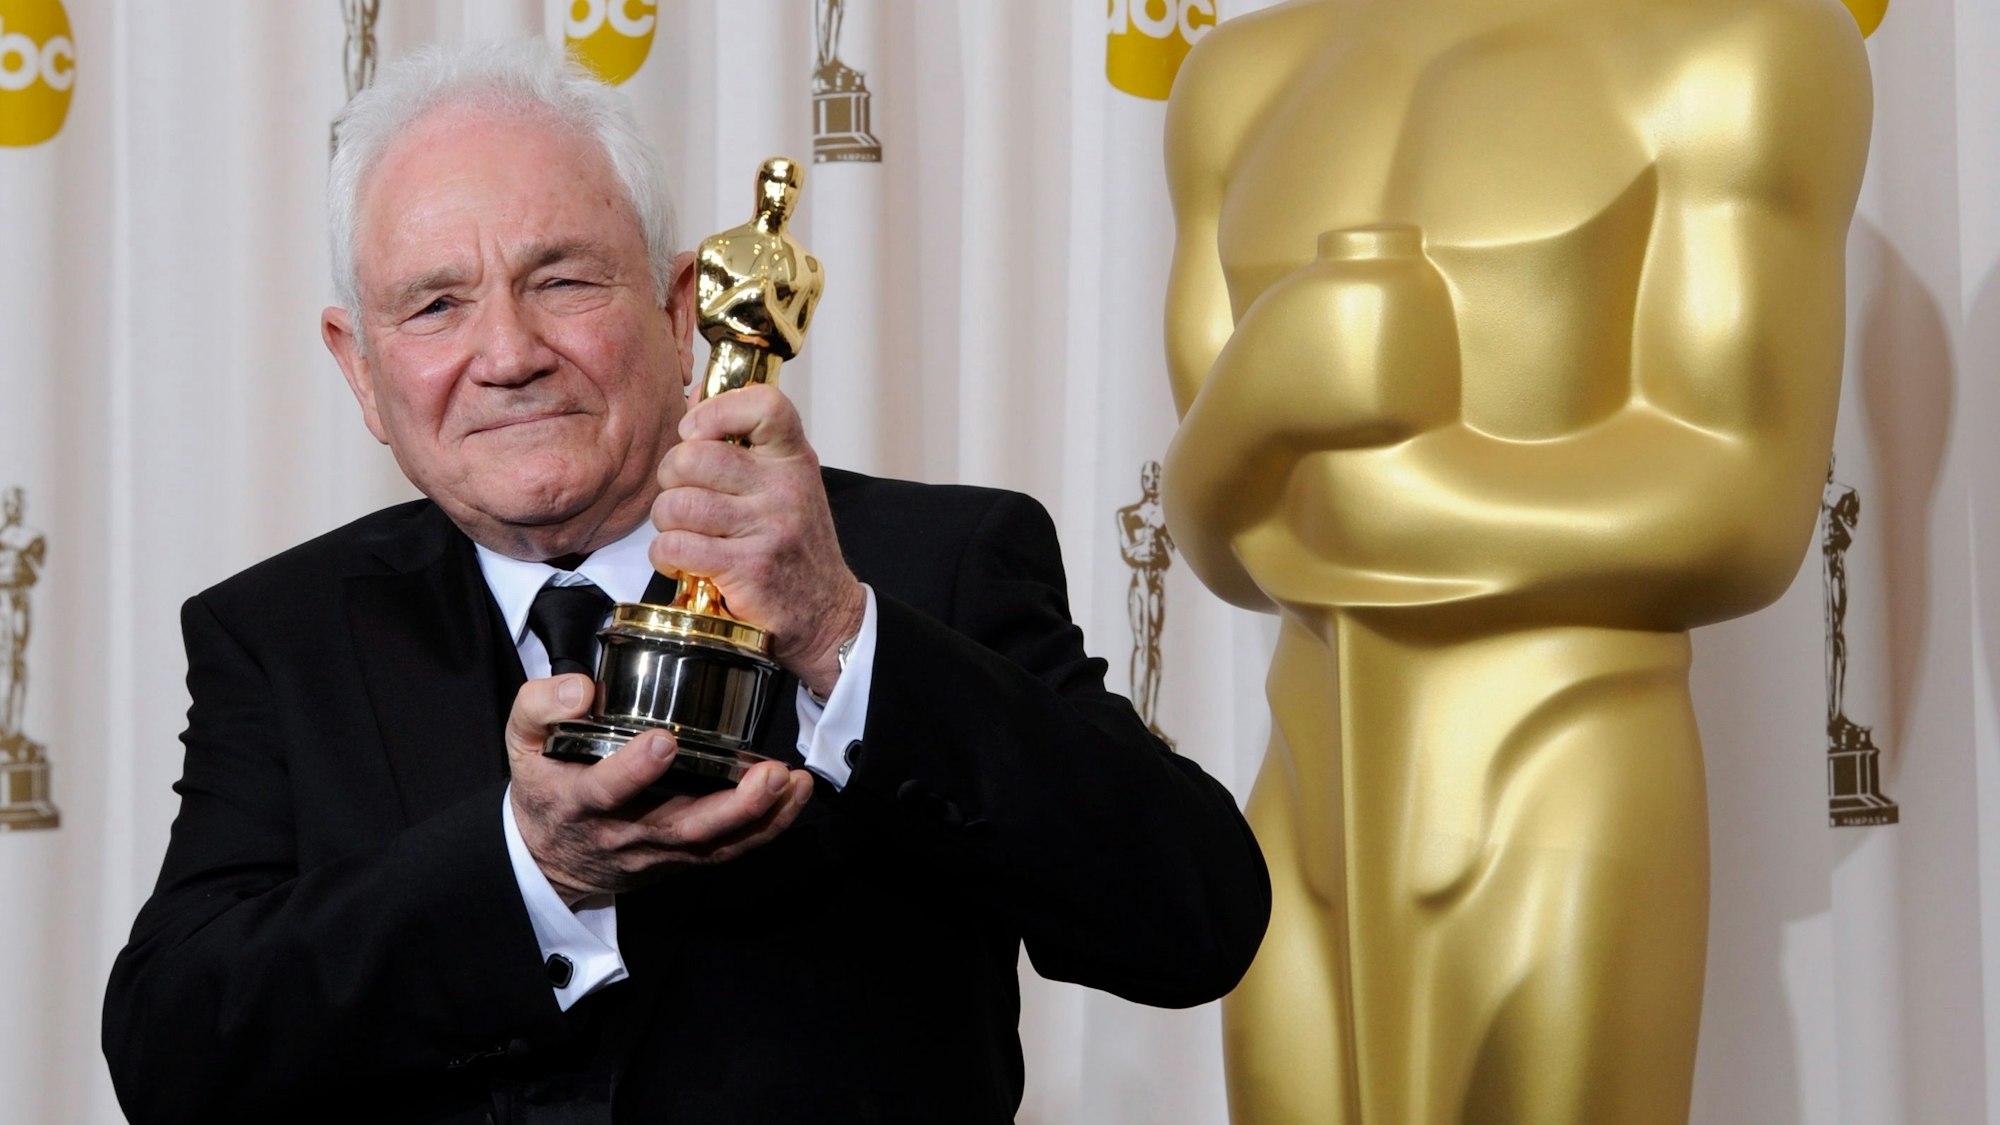 Drehbuchautor David Seidler 2011 mit seinem Oscar für das beste Originaldrehbuch für „The King's Speech“.